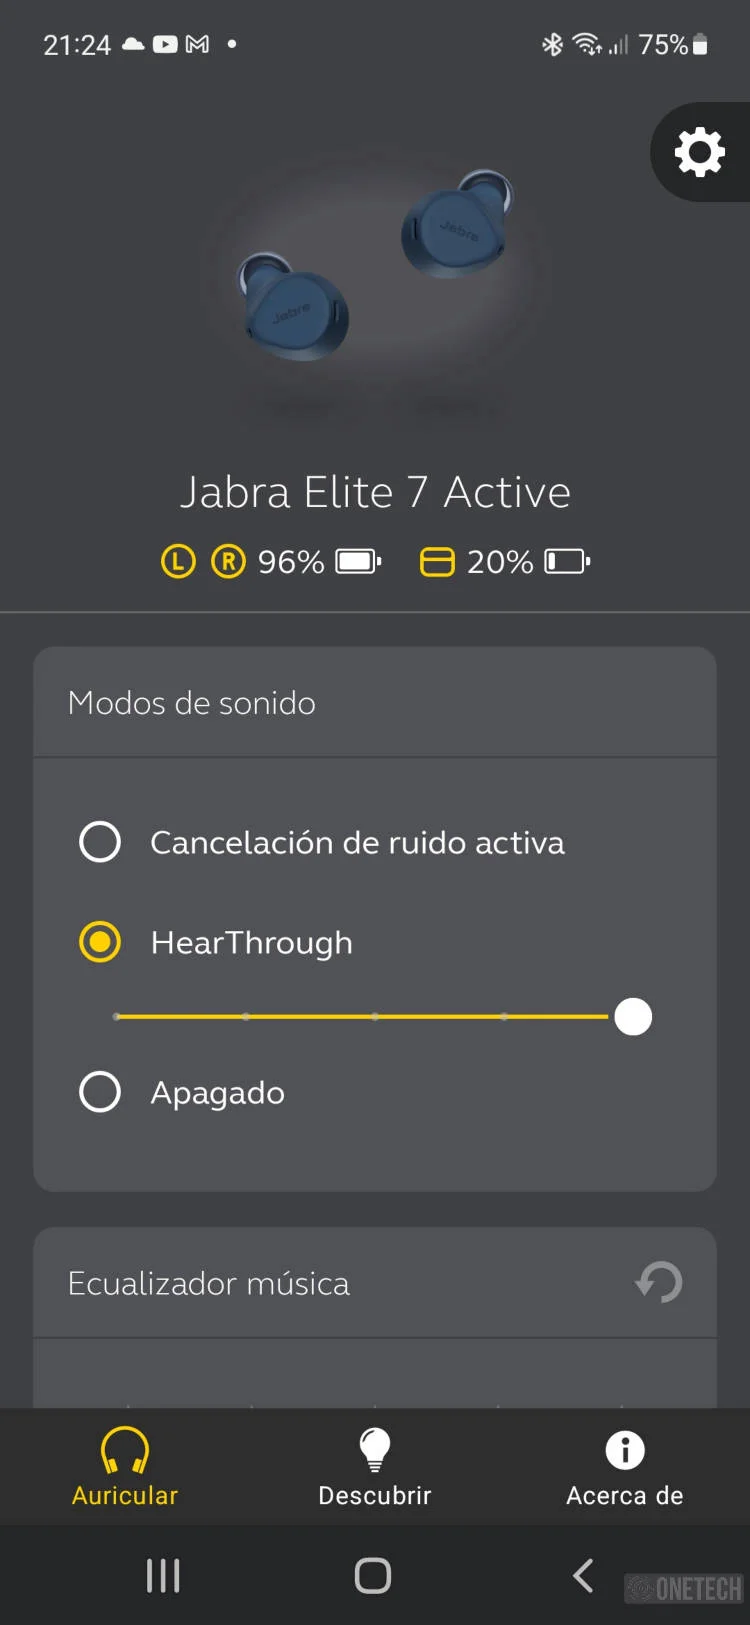 Jabra Elite 7 Active, la gama alta de auriculares "sport" con ANC y carga inalámbrica - Análisis 16